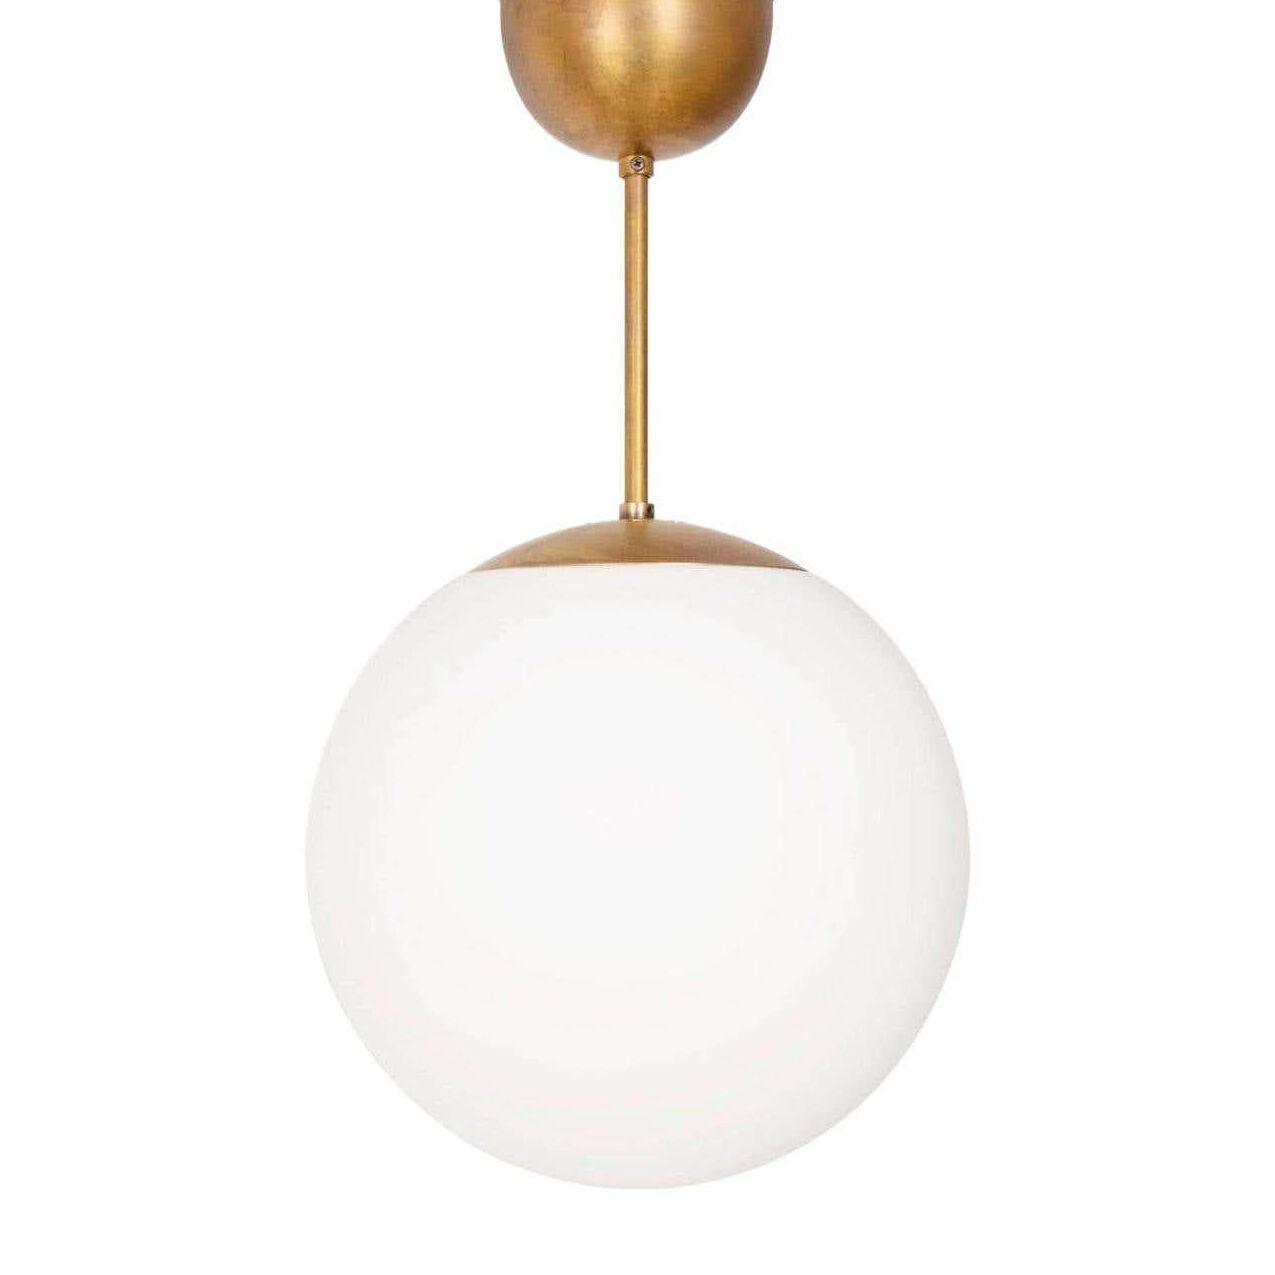 Konsthantverk Glob Brass D25 Ceiling Lamp